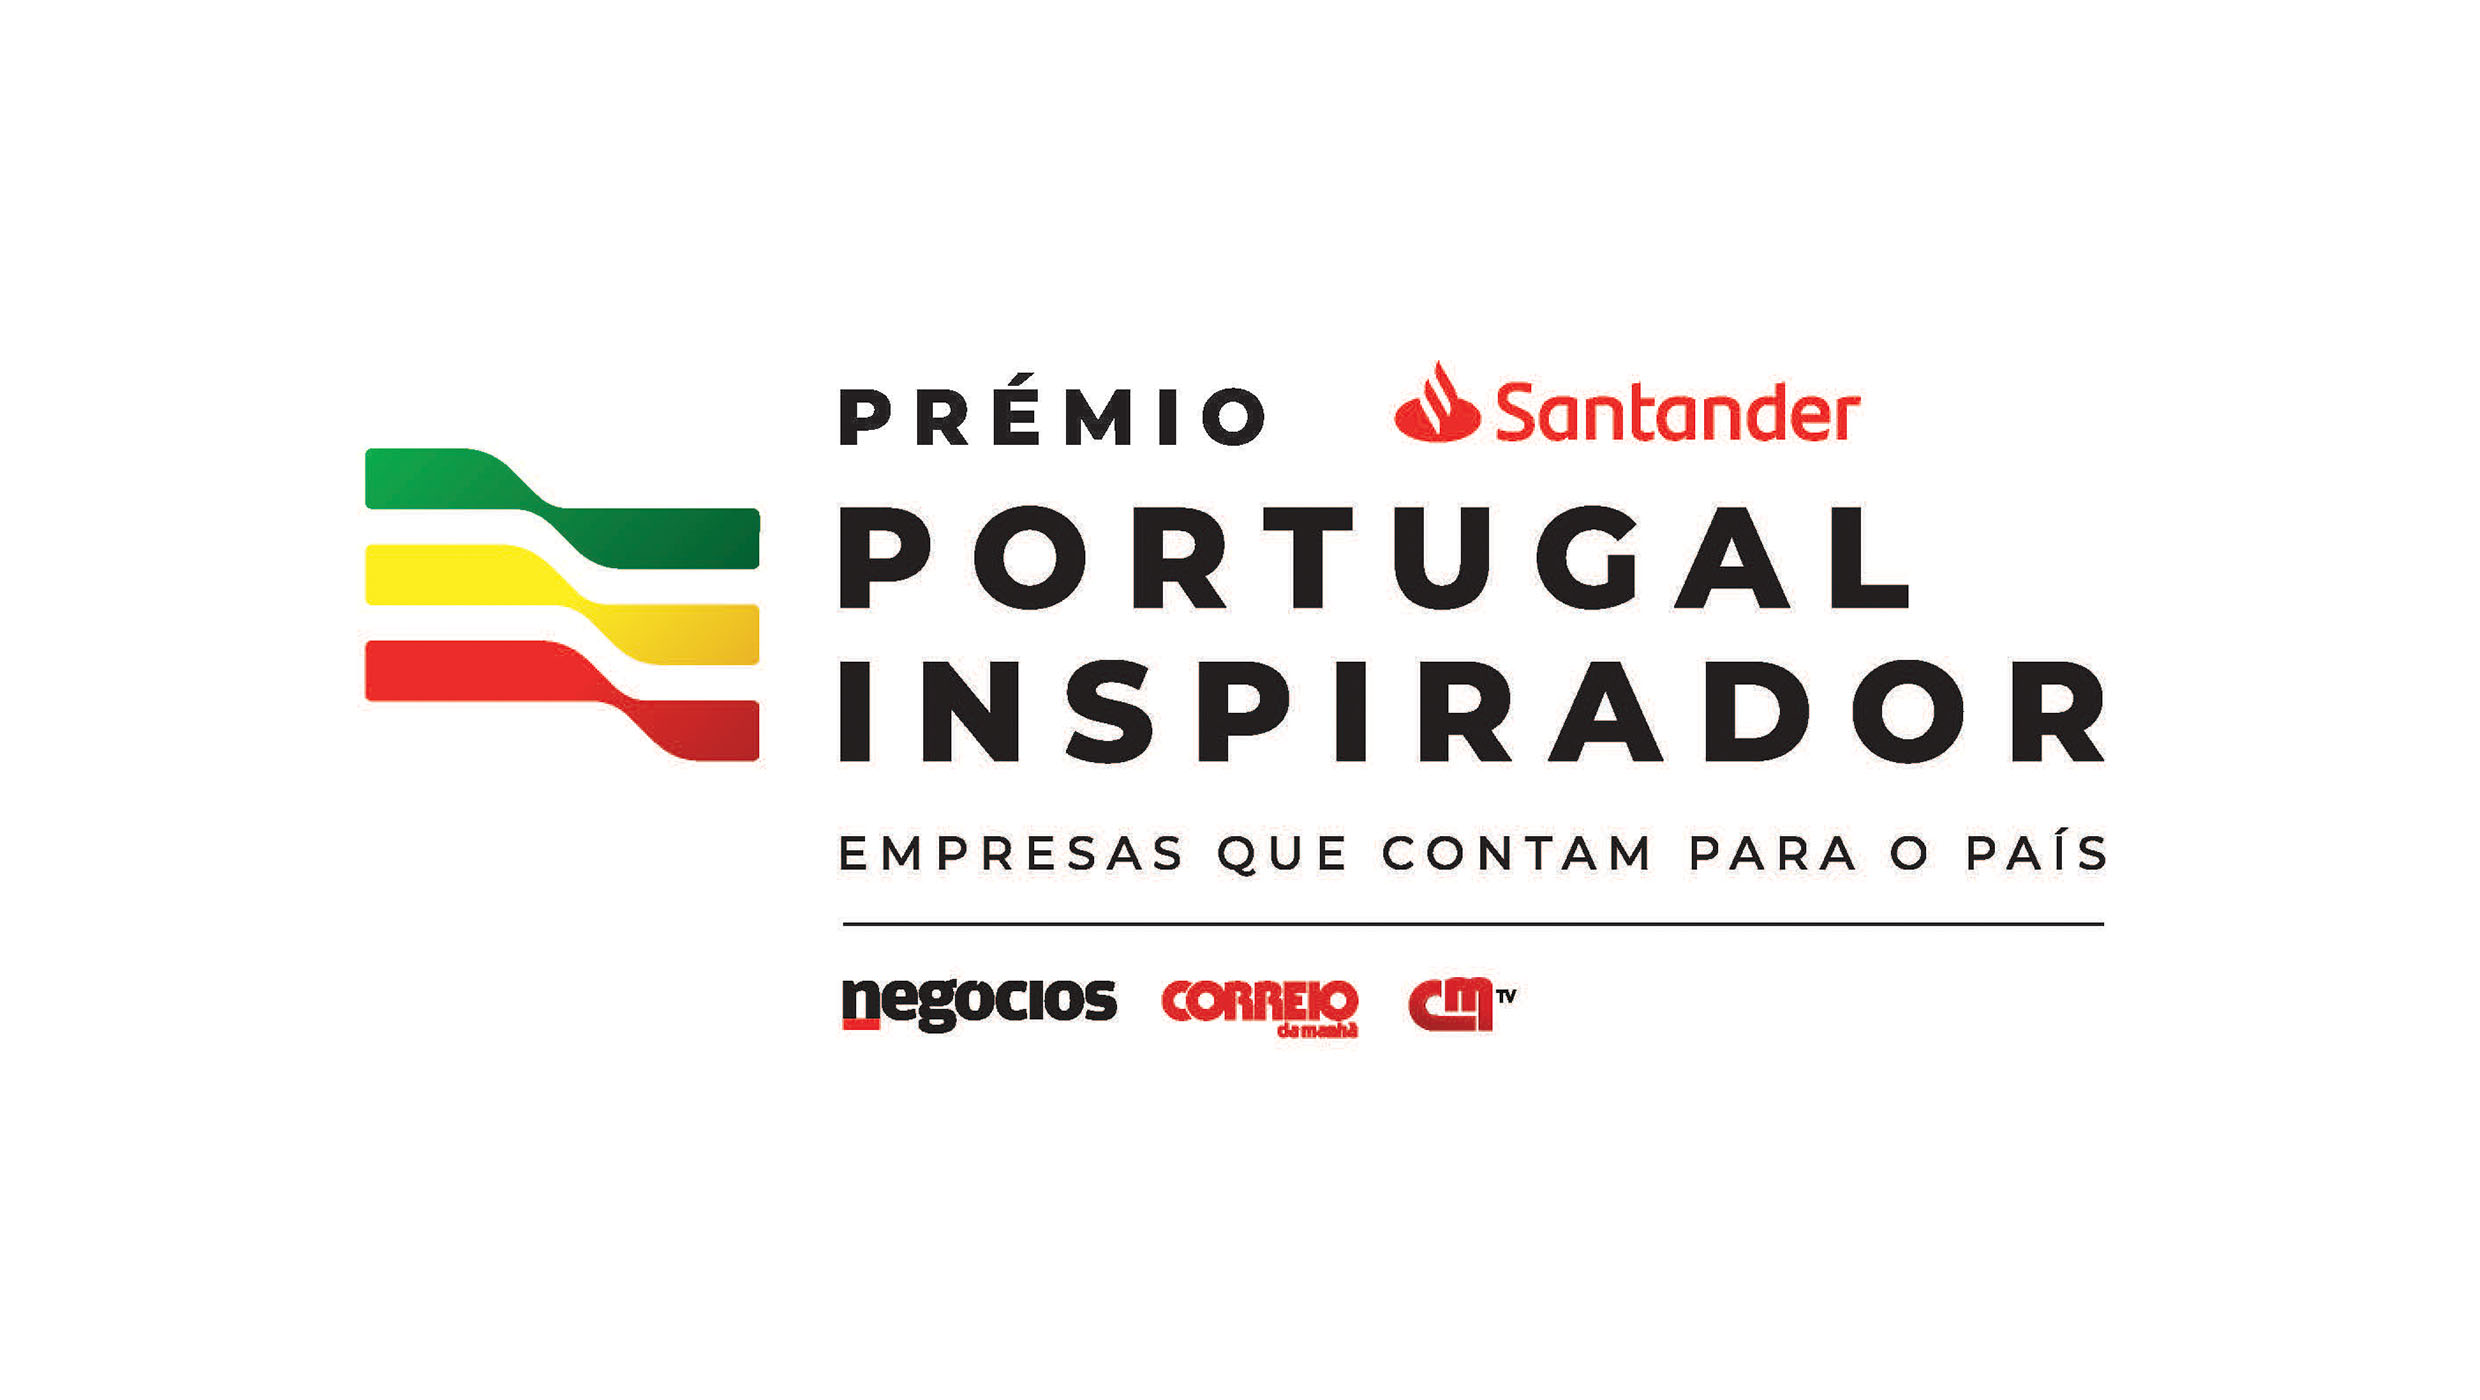 premio-santander-portugal-inspirador-em-parceria-com-cofina